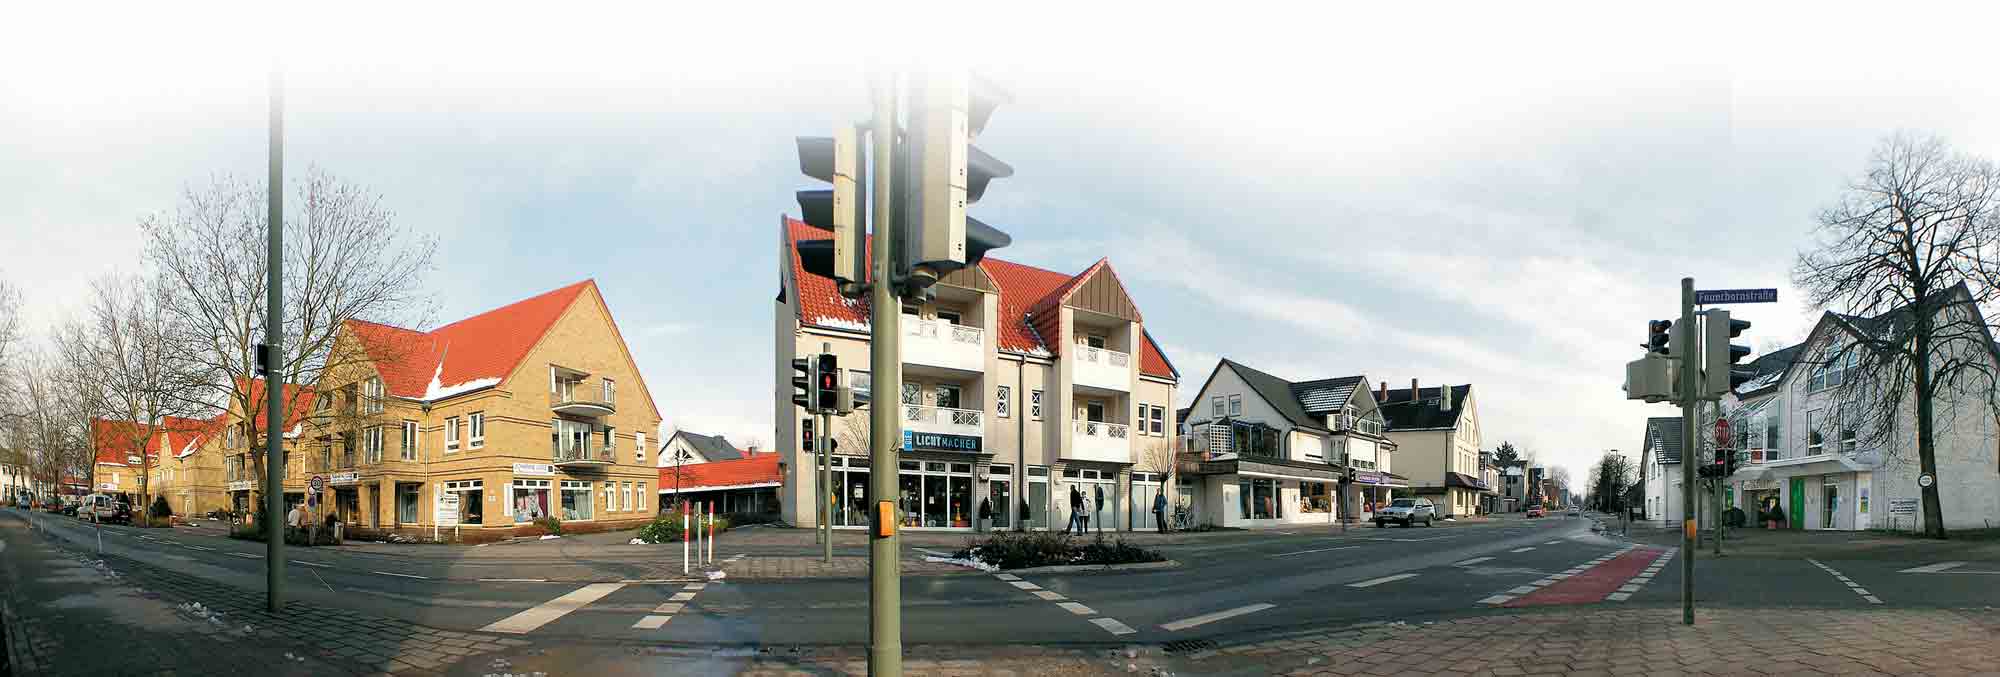 Anzeige: Guter Geschmack in Gütersloh, Gemeinschaftsaktion der Einzelhändler an der Neuenkirchener Straße, 11. und 12. März 2005